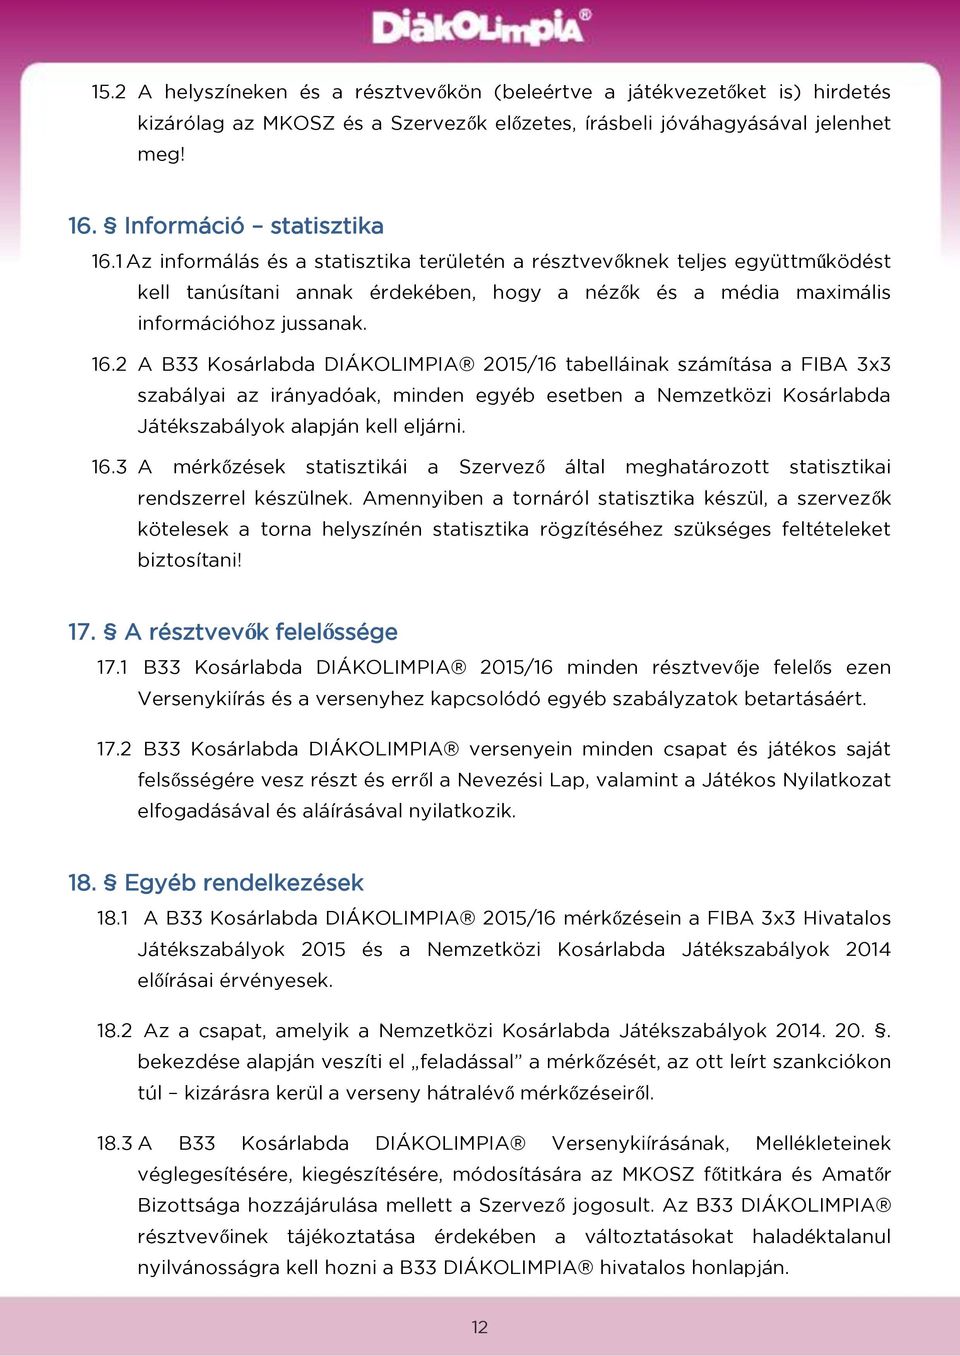 2 A B33 Kosárlabda DIÁKOLIMPIA 2015/16 tabelláinak számítása a FIBA 3x3 szabályai az irányadóak, minden egyéb esetben a Nemzetközi Kosárlabda Játékszabályok alapján kell eljárni. 16.